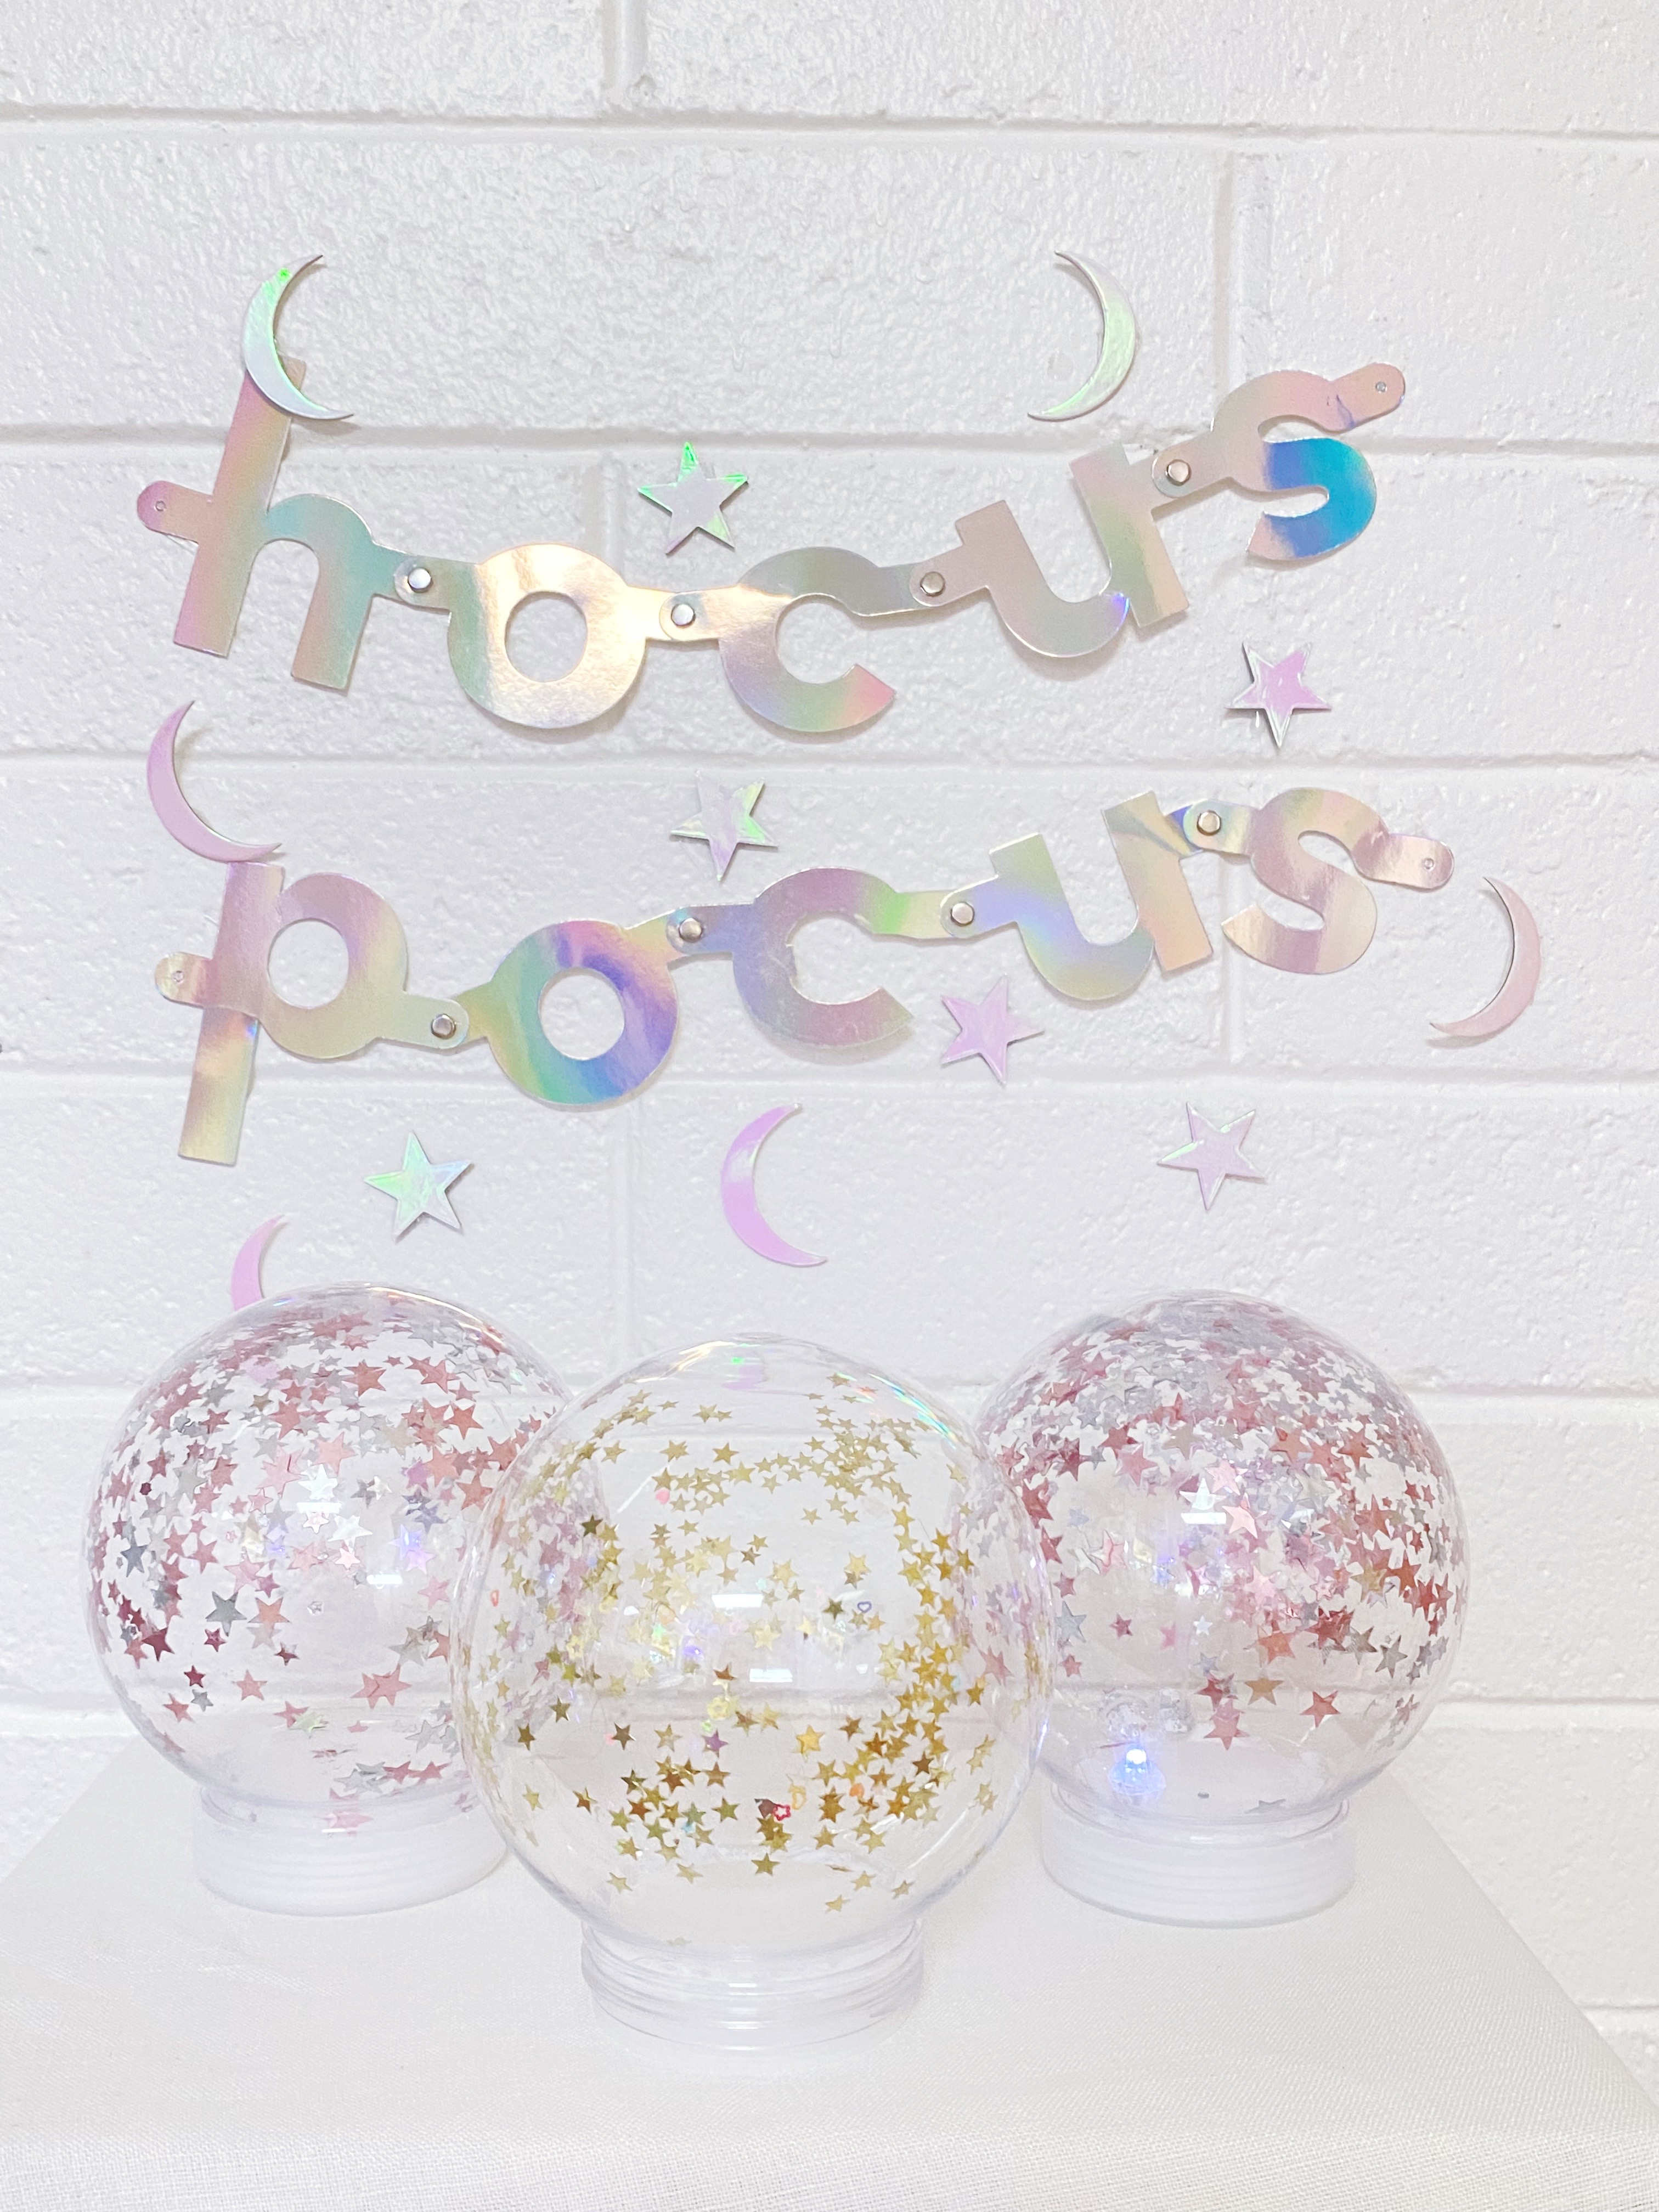 diy magic crystal ball with hocus pocus sign